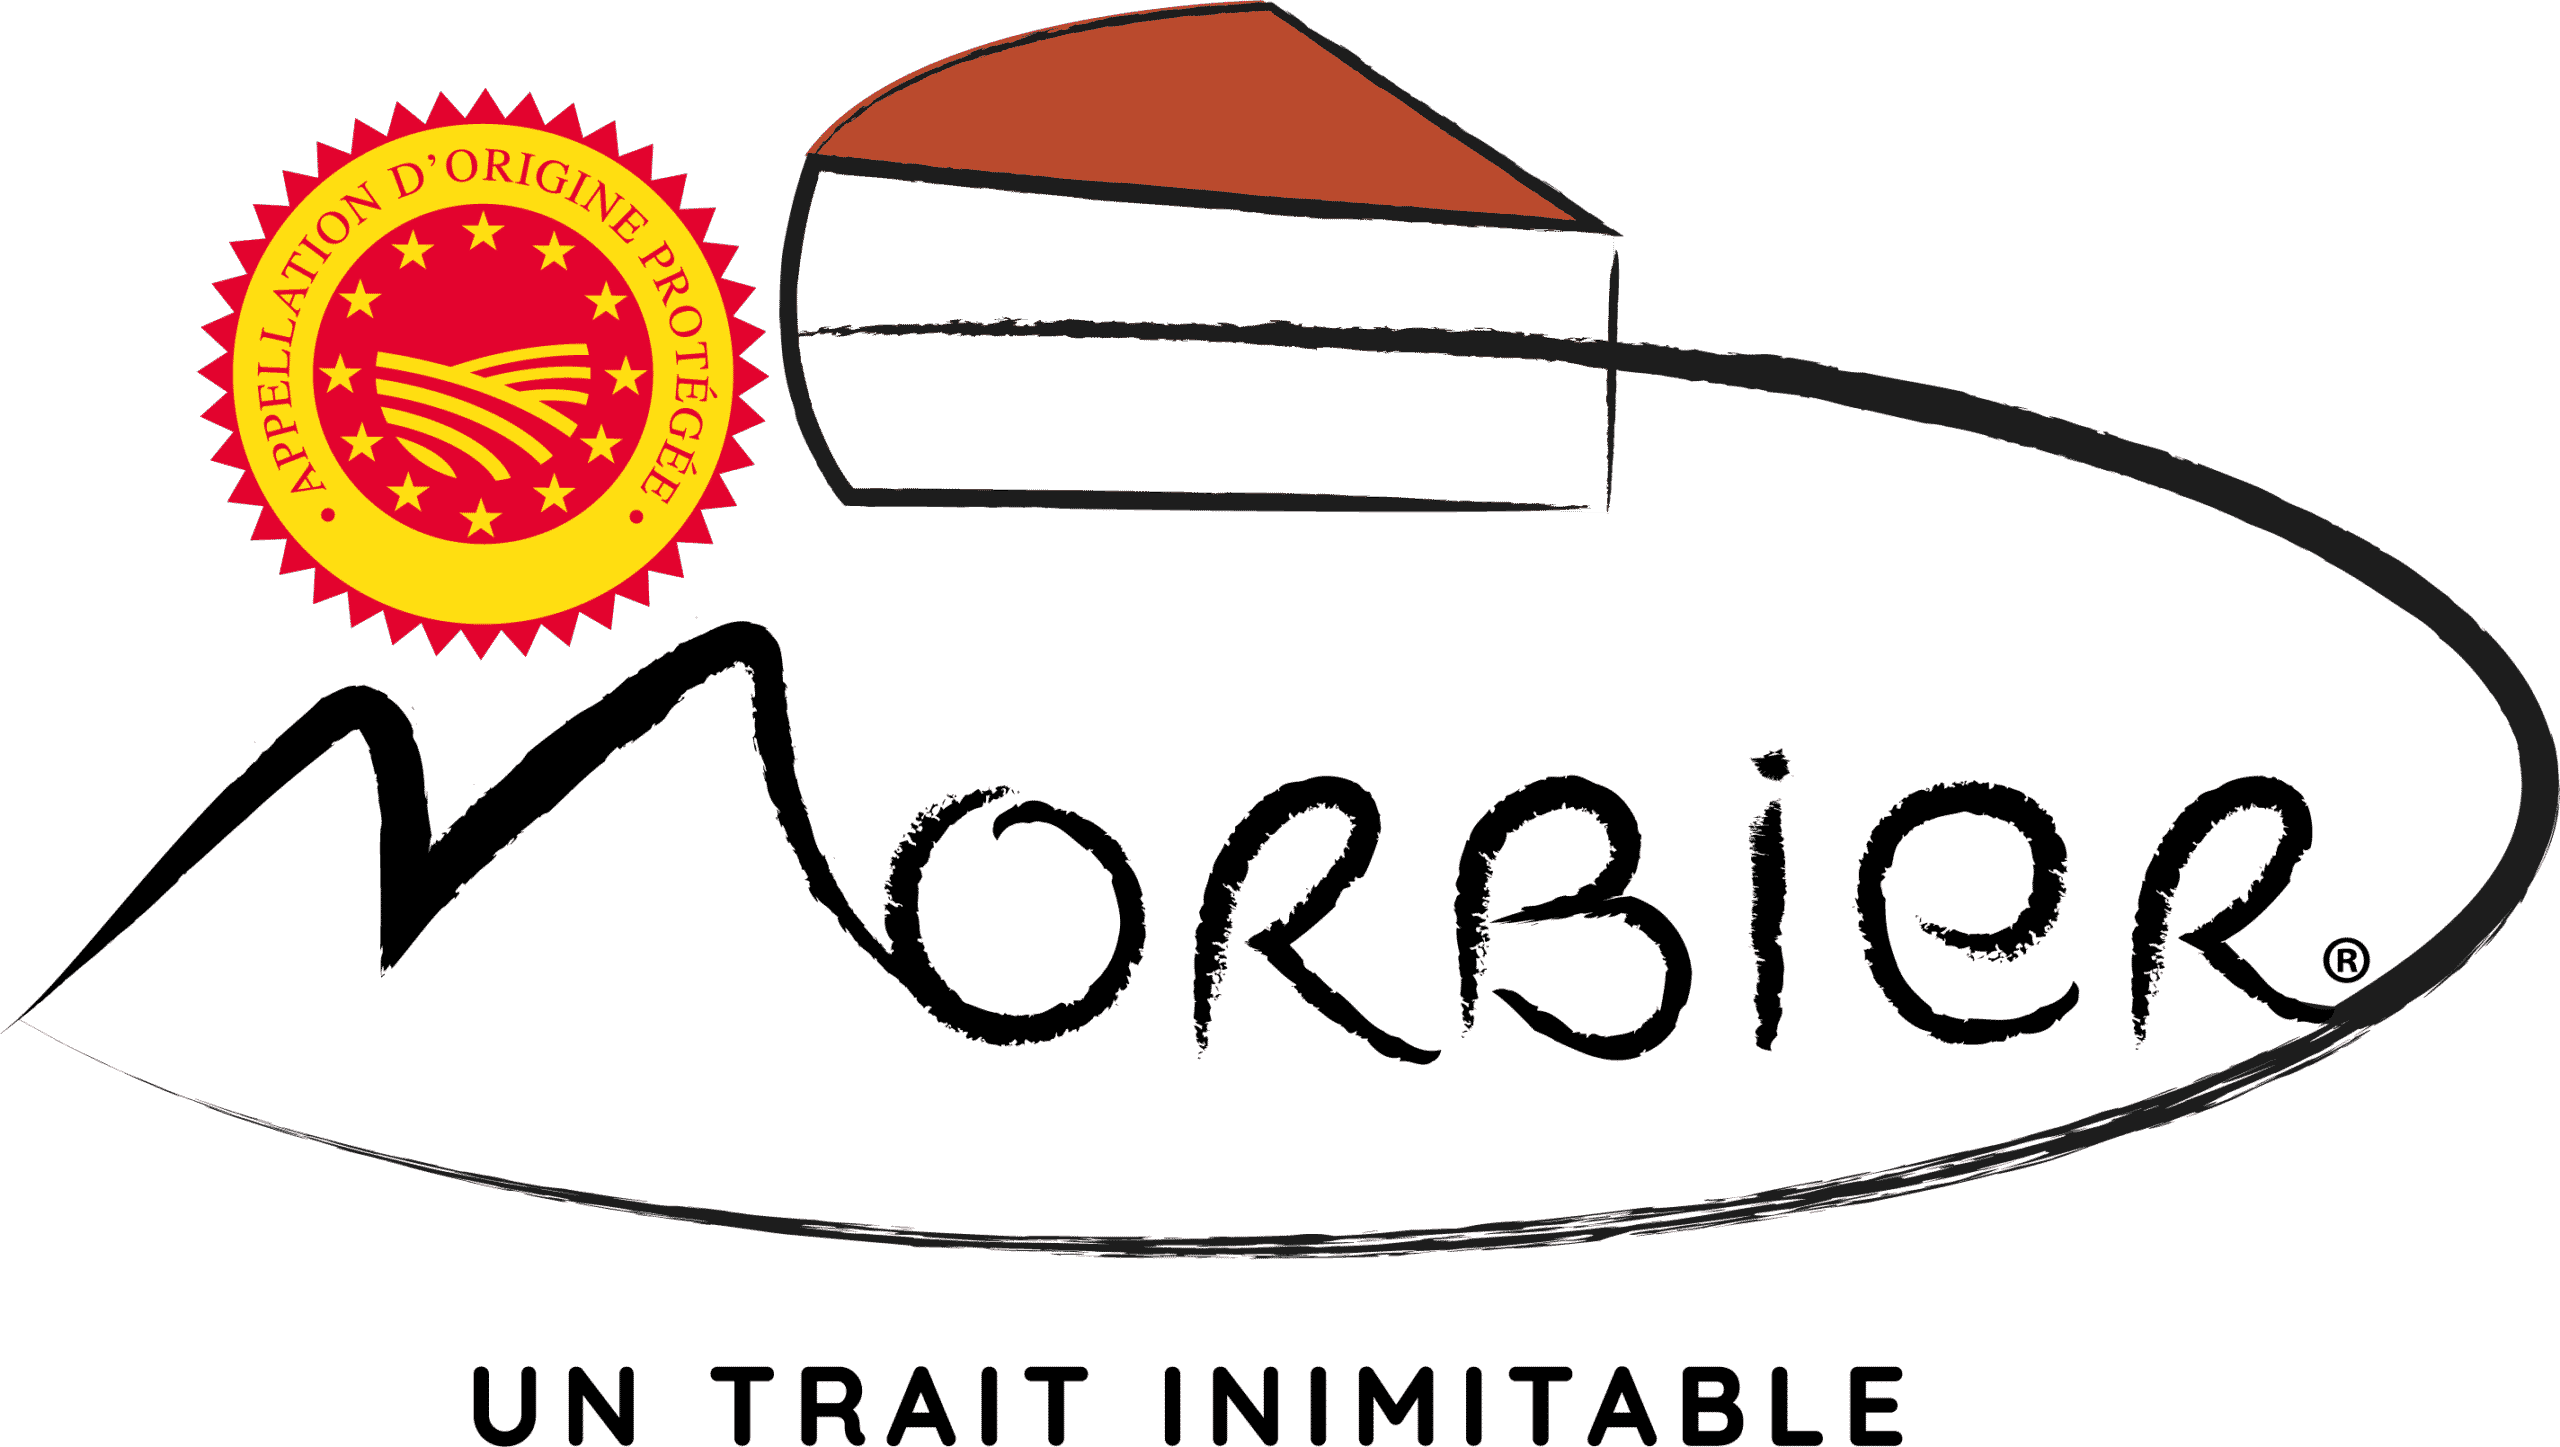 Morbier